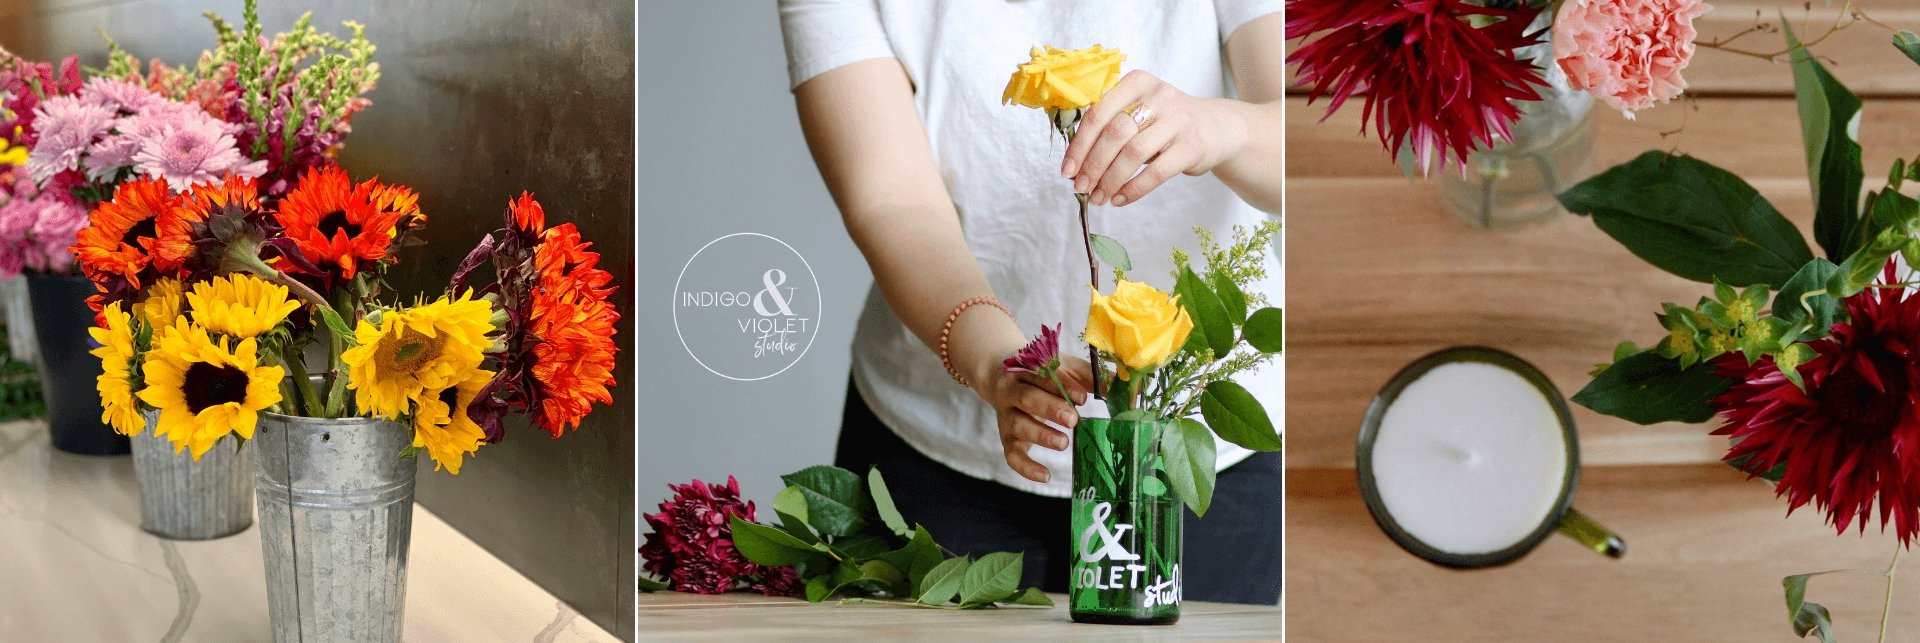 Floral Candles + Floral Design Workshop - August 20 - indigo & violet studio LLC